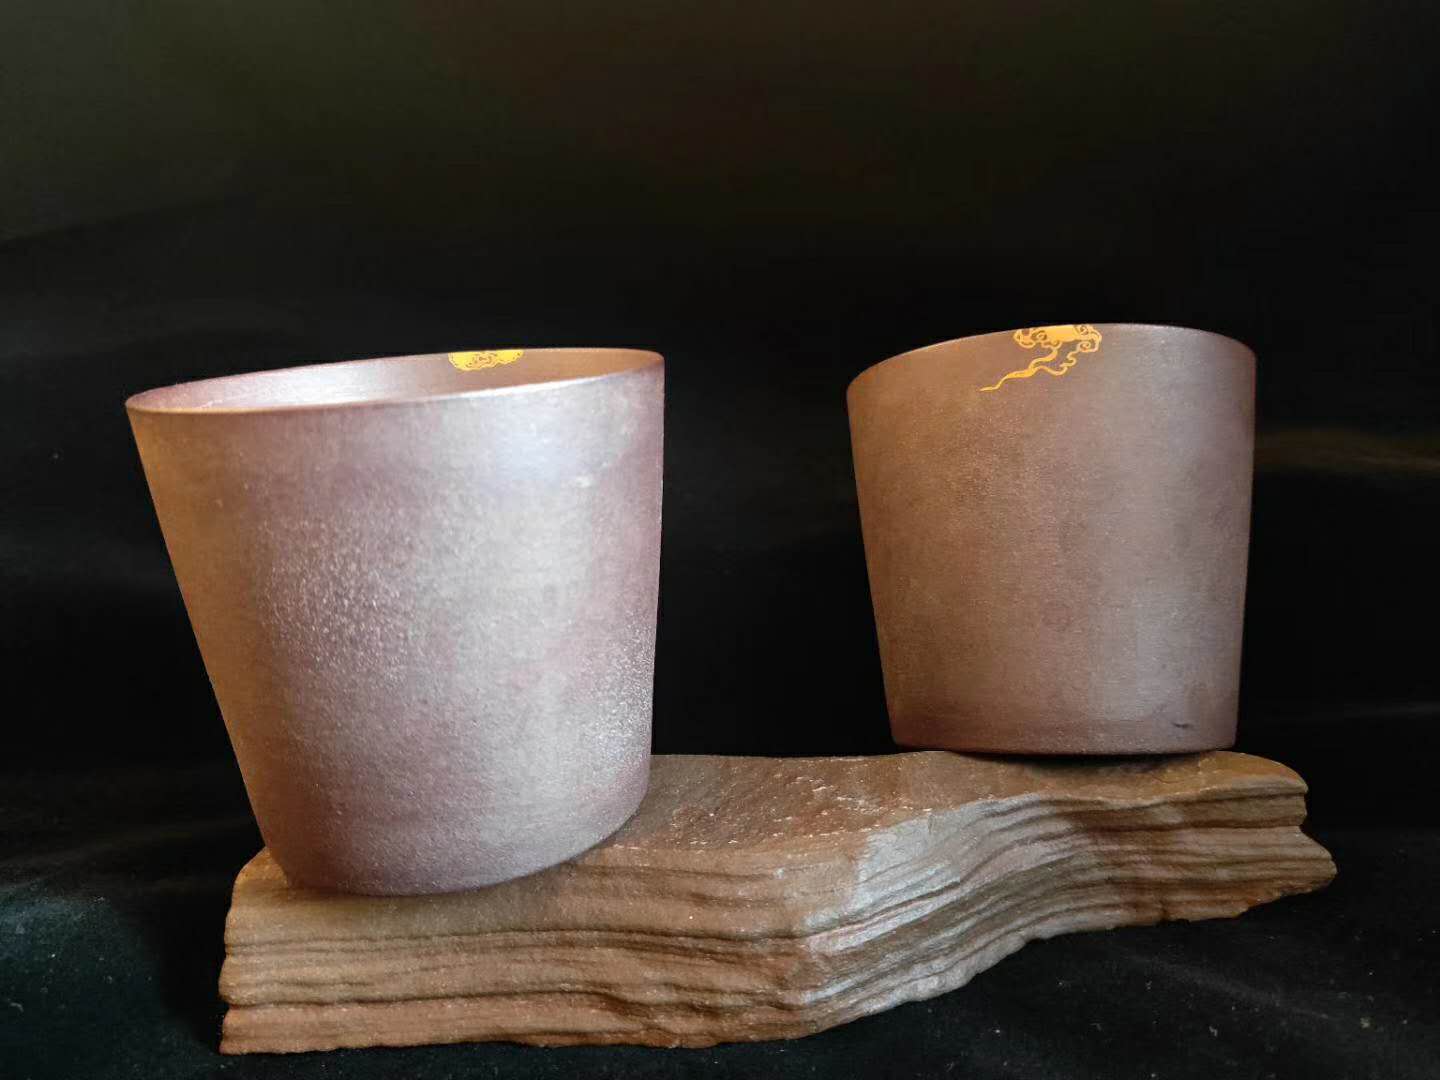 石家庄紫砂壶的几种修复方法电话 南京美瓷工艺品有限公司